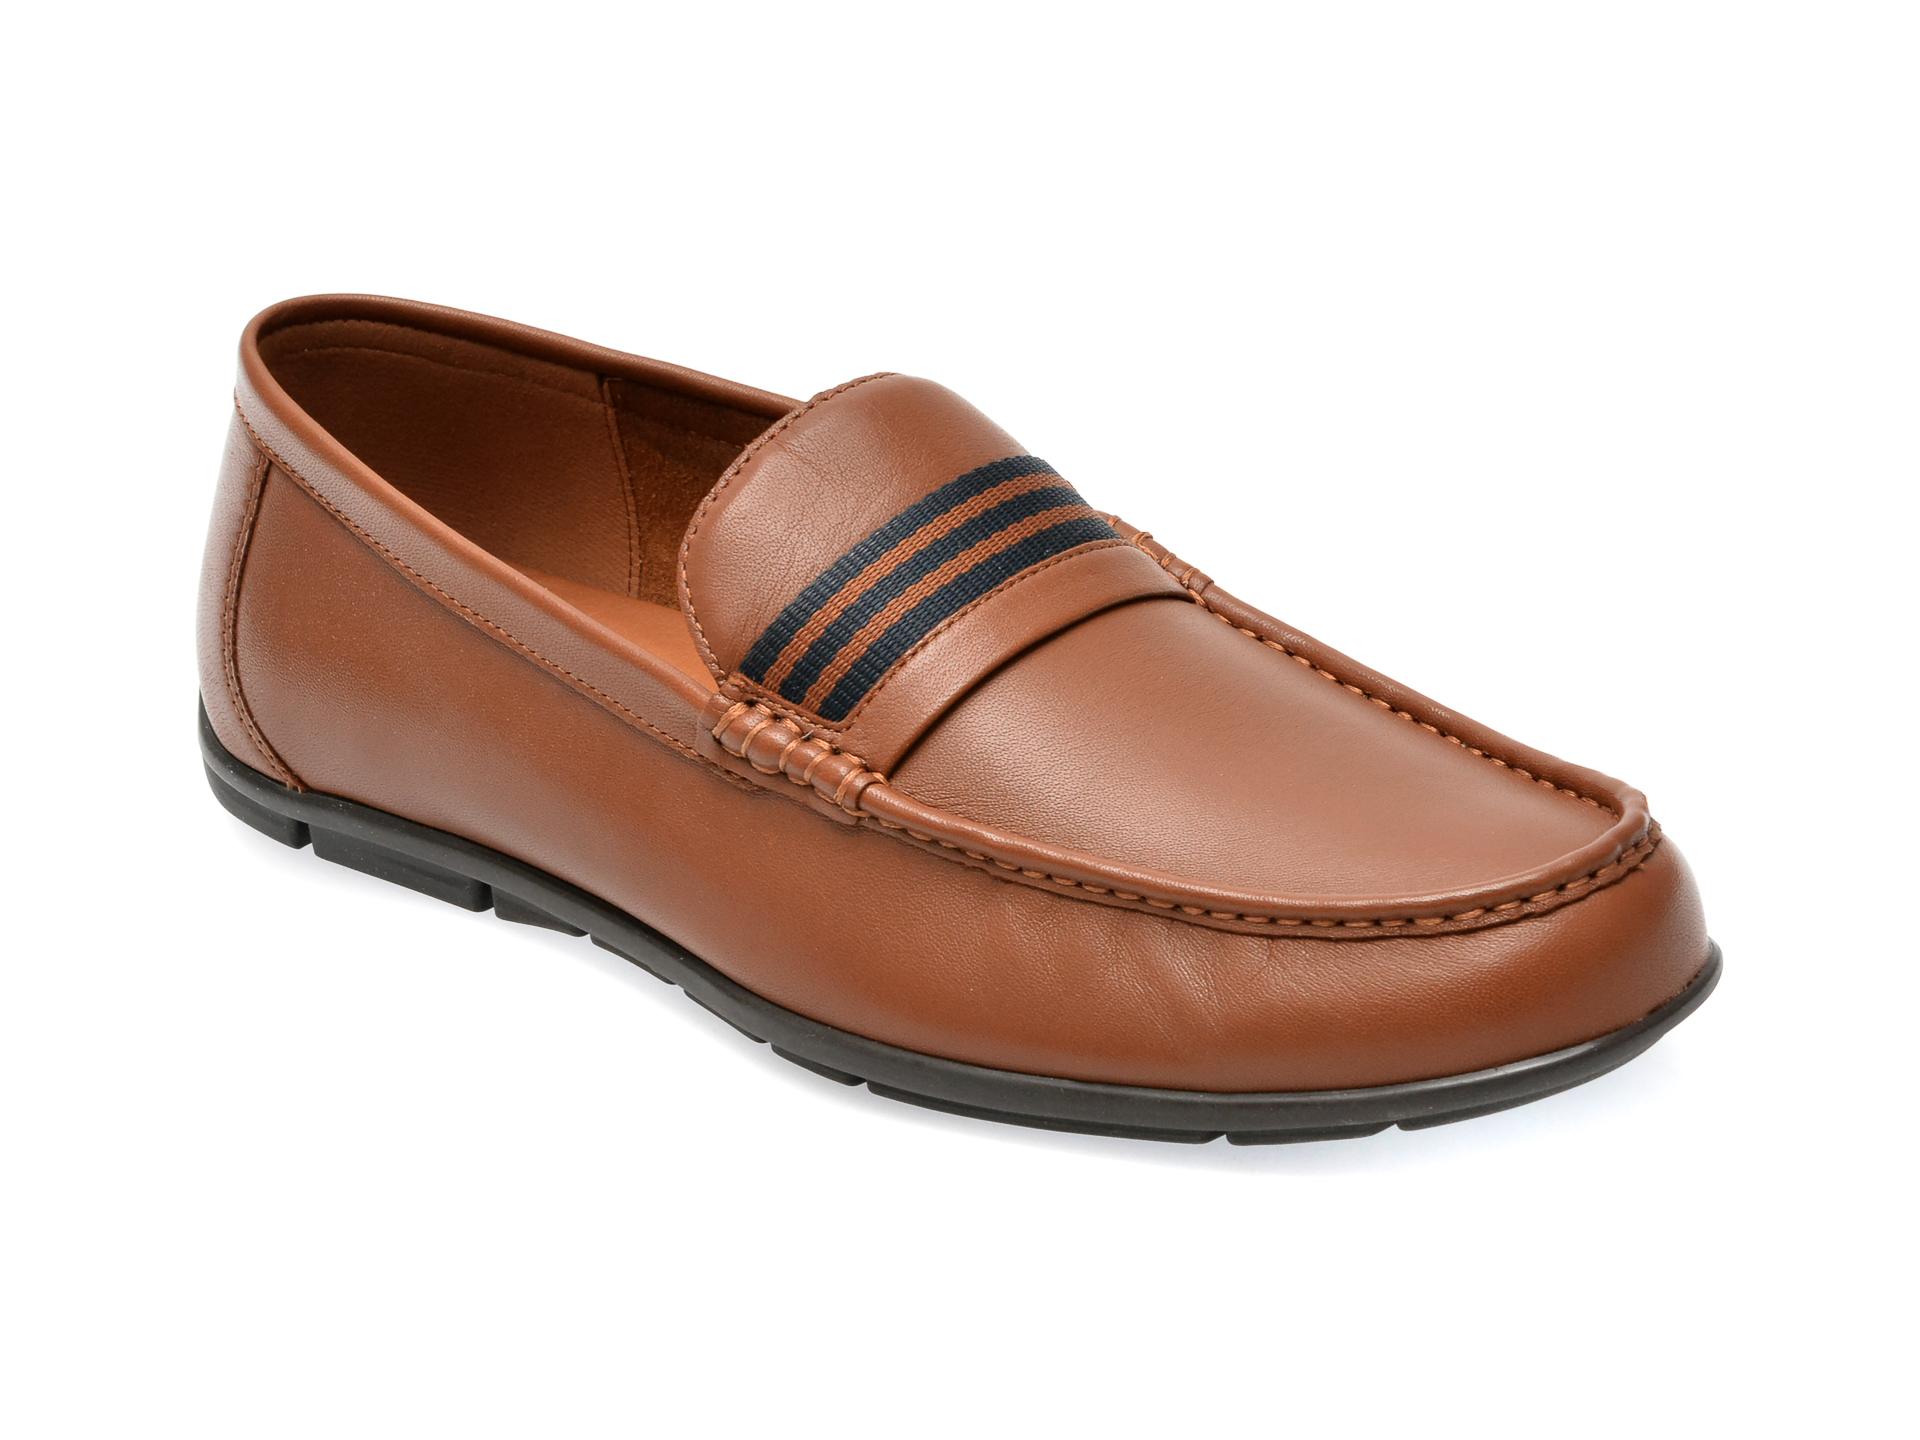 Pantofi ALDO maro, BOREALIS220, din piele naturala /barbati/pantofi